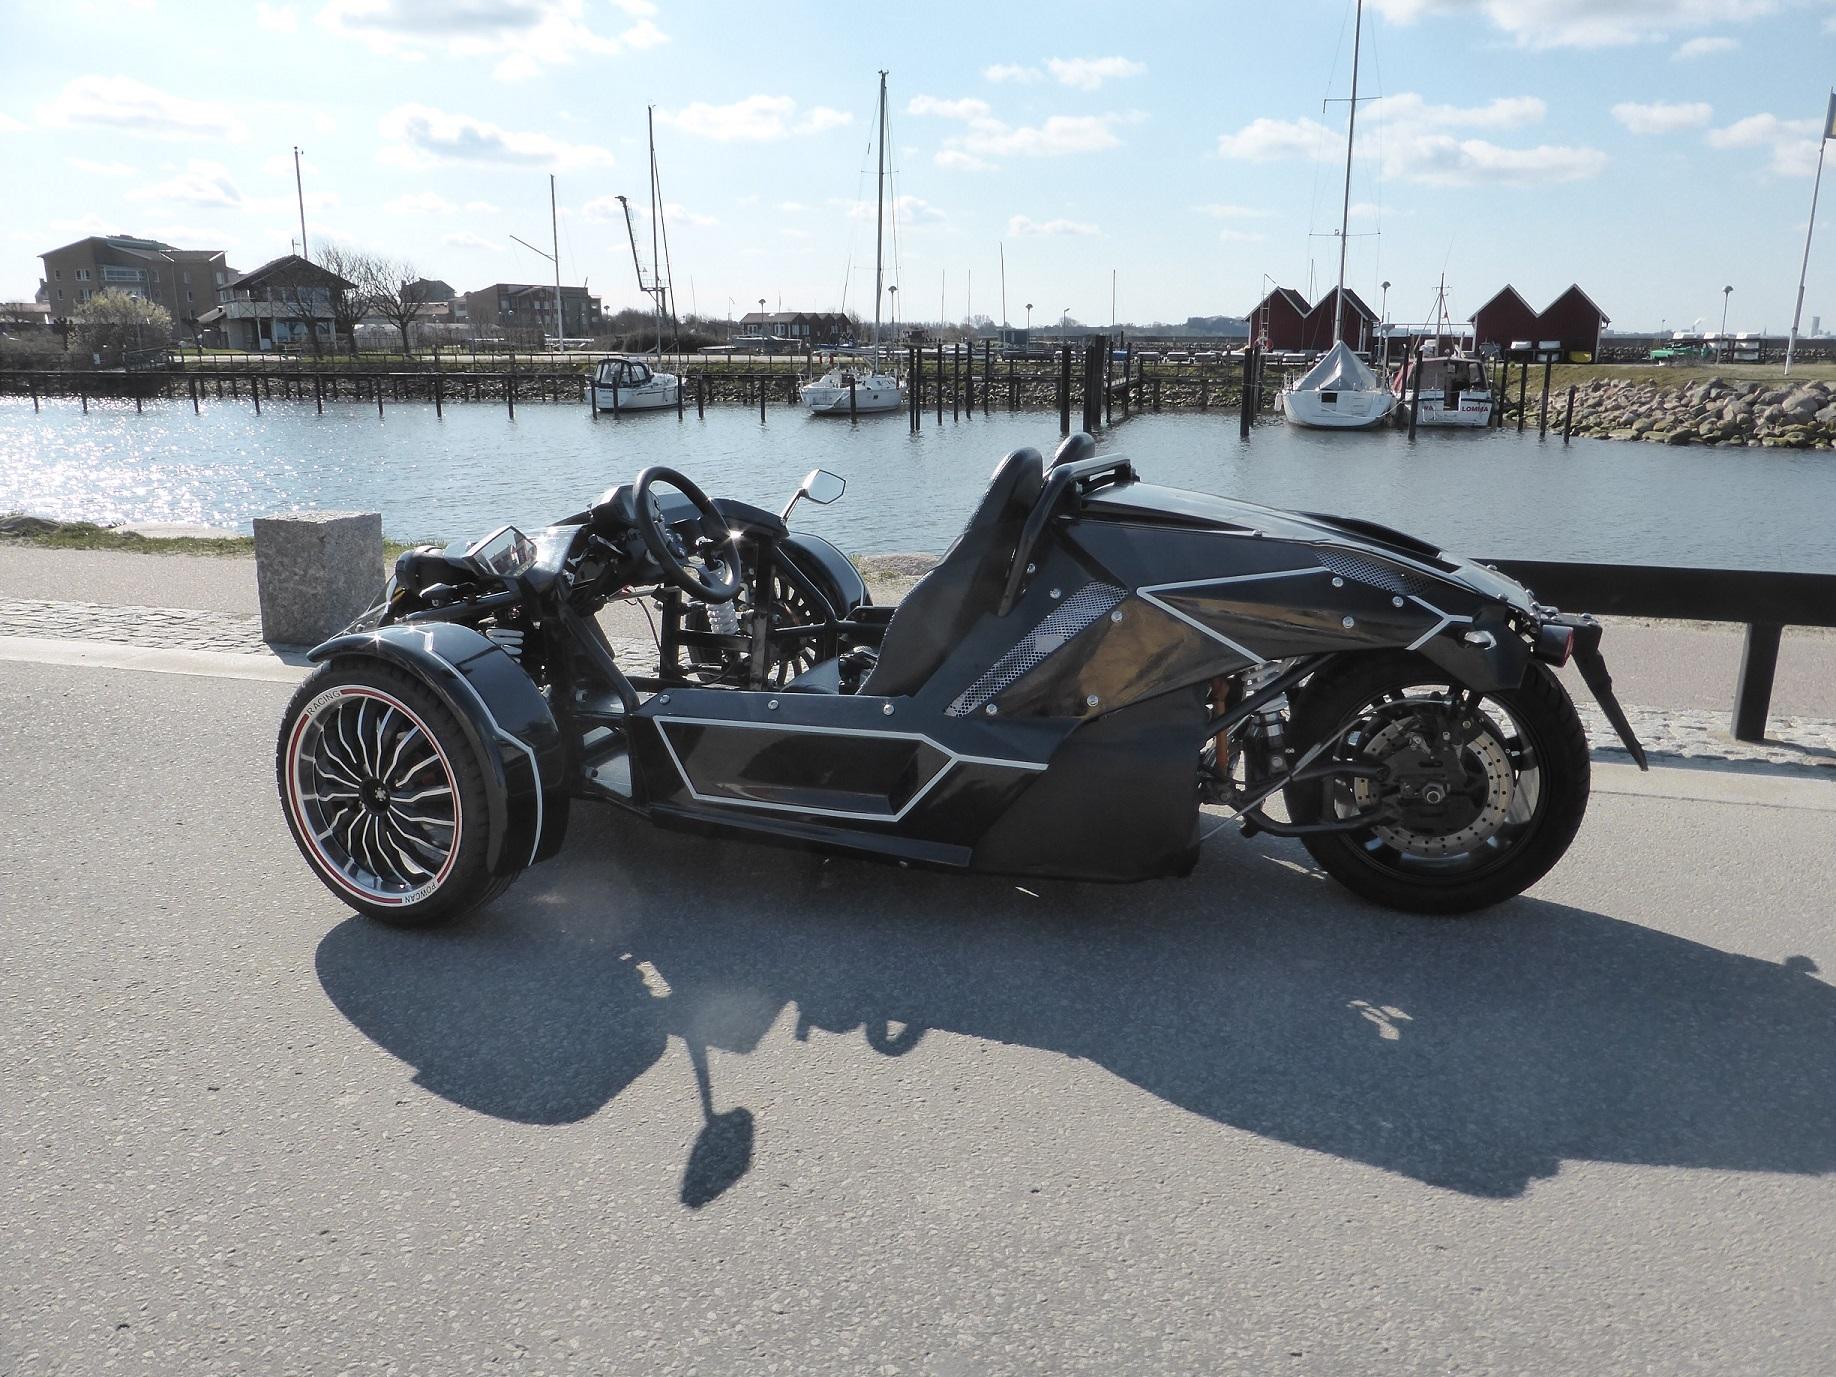 En ny eldriven trehjulig motorcykel har sett dagens ljus. 